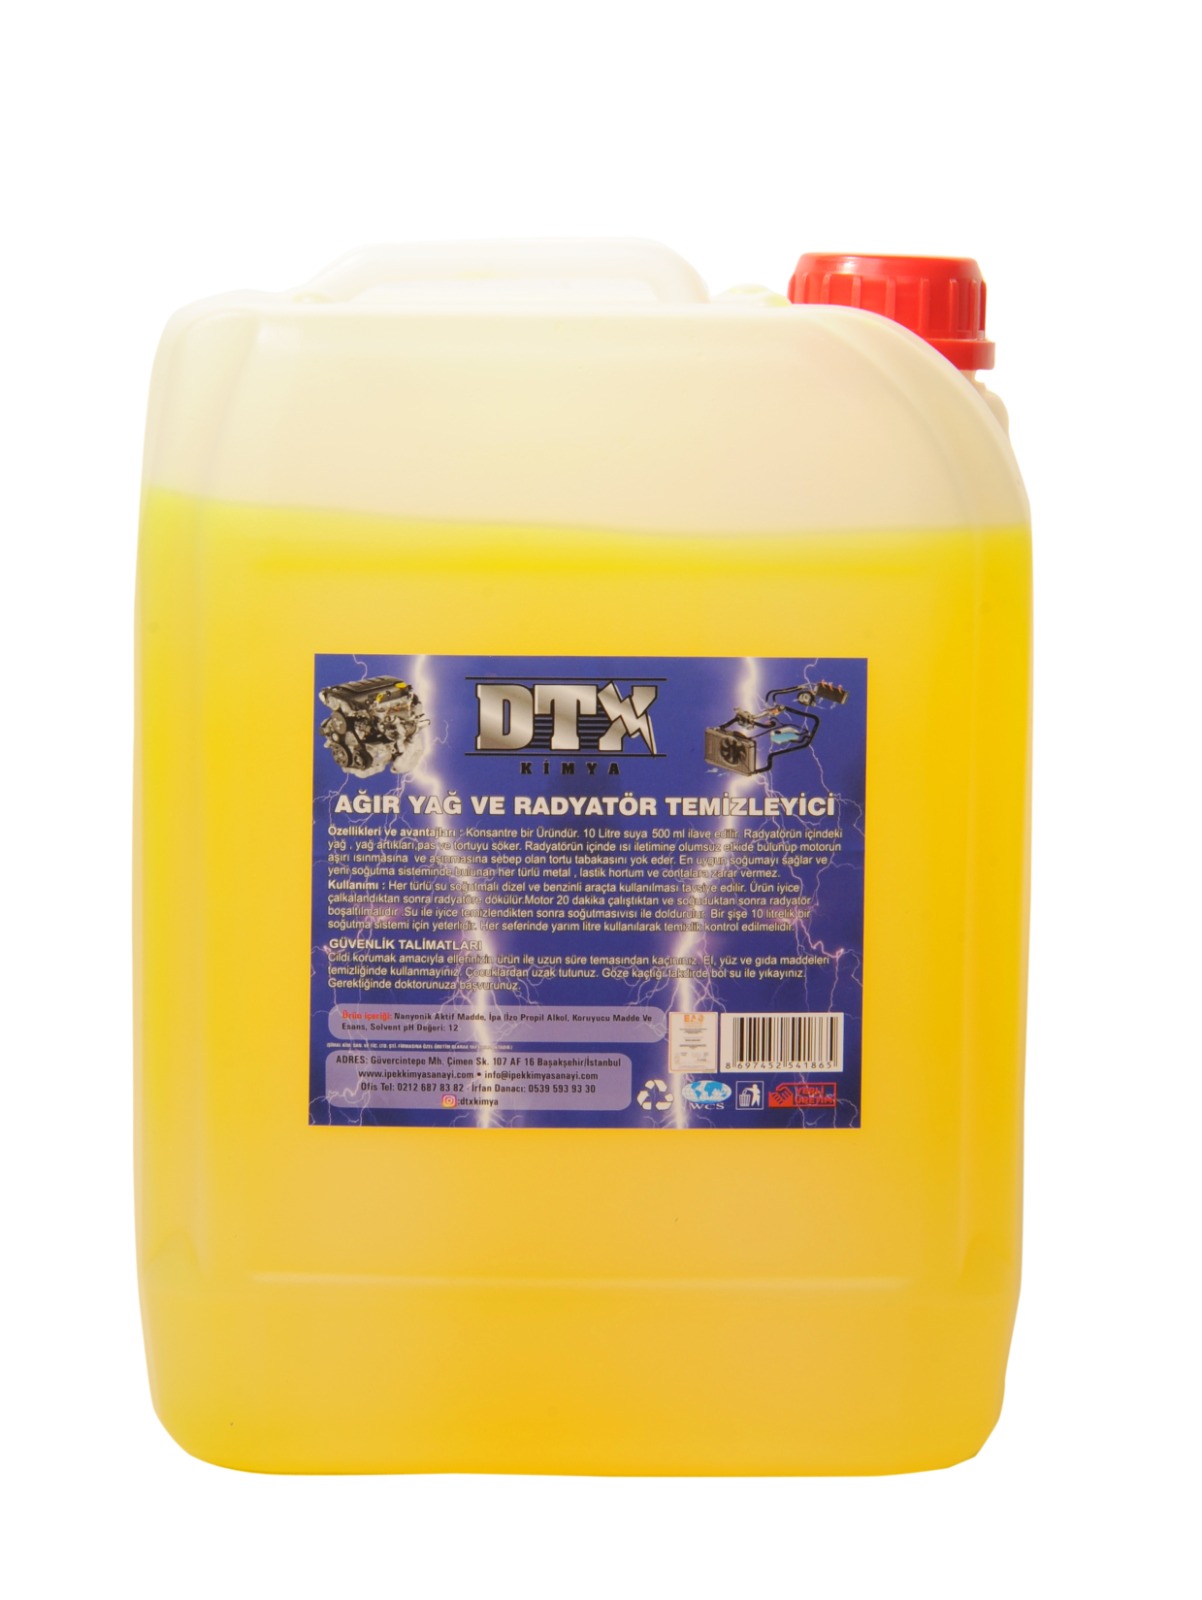 dtx-kimya-sarı-agır-yag-sokucu-radyator-temizleme-ilacı-5-litre